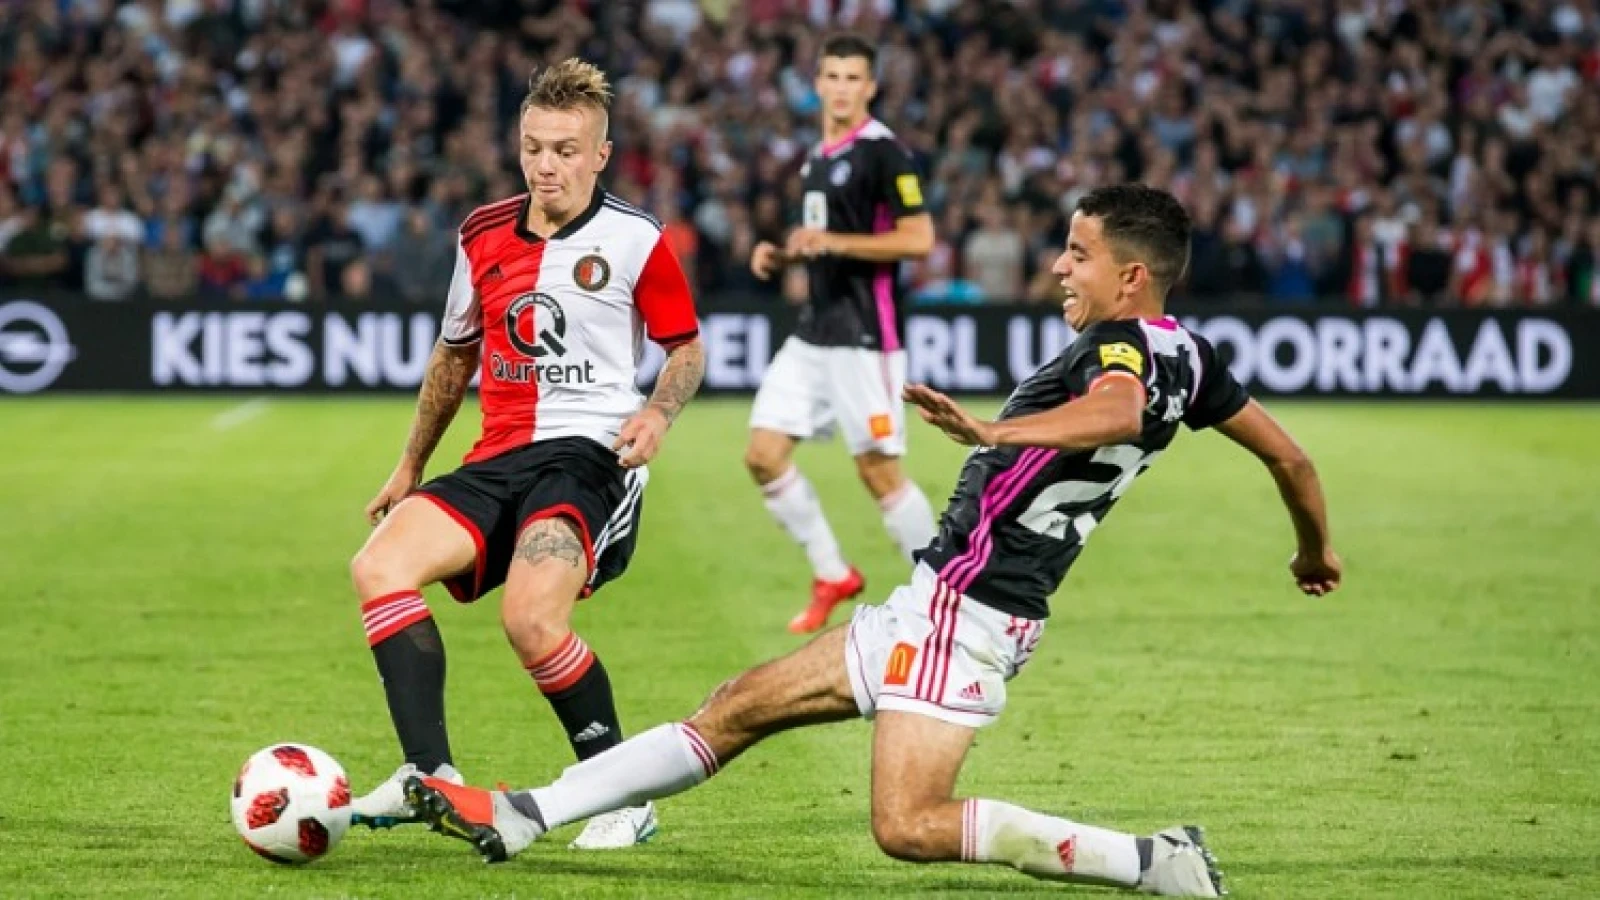 LIVE | Feyenoord - AS Trencin 1-1 | Einde wedstrijd